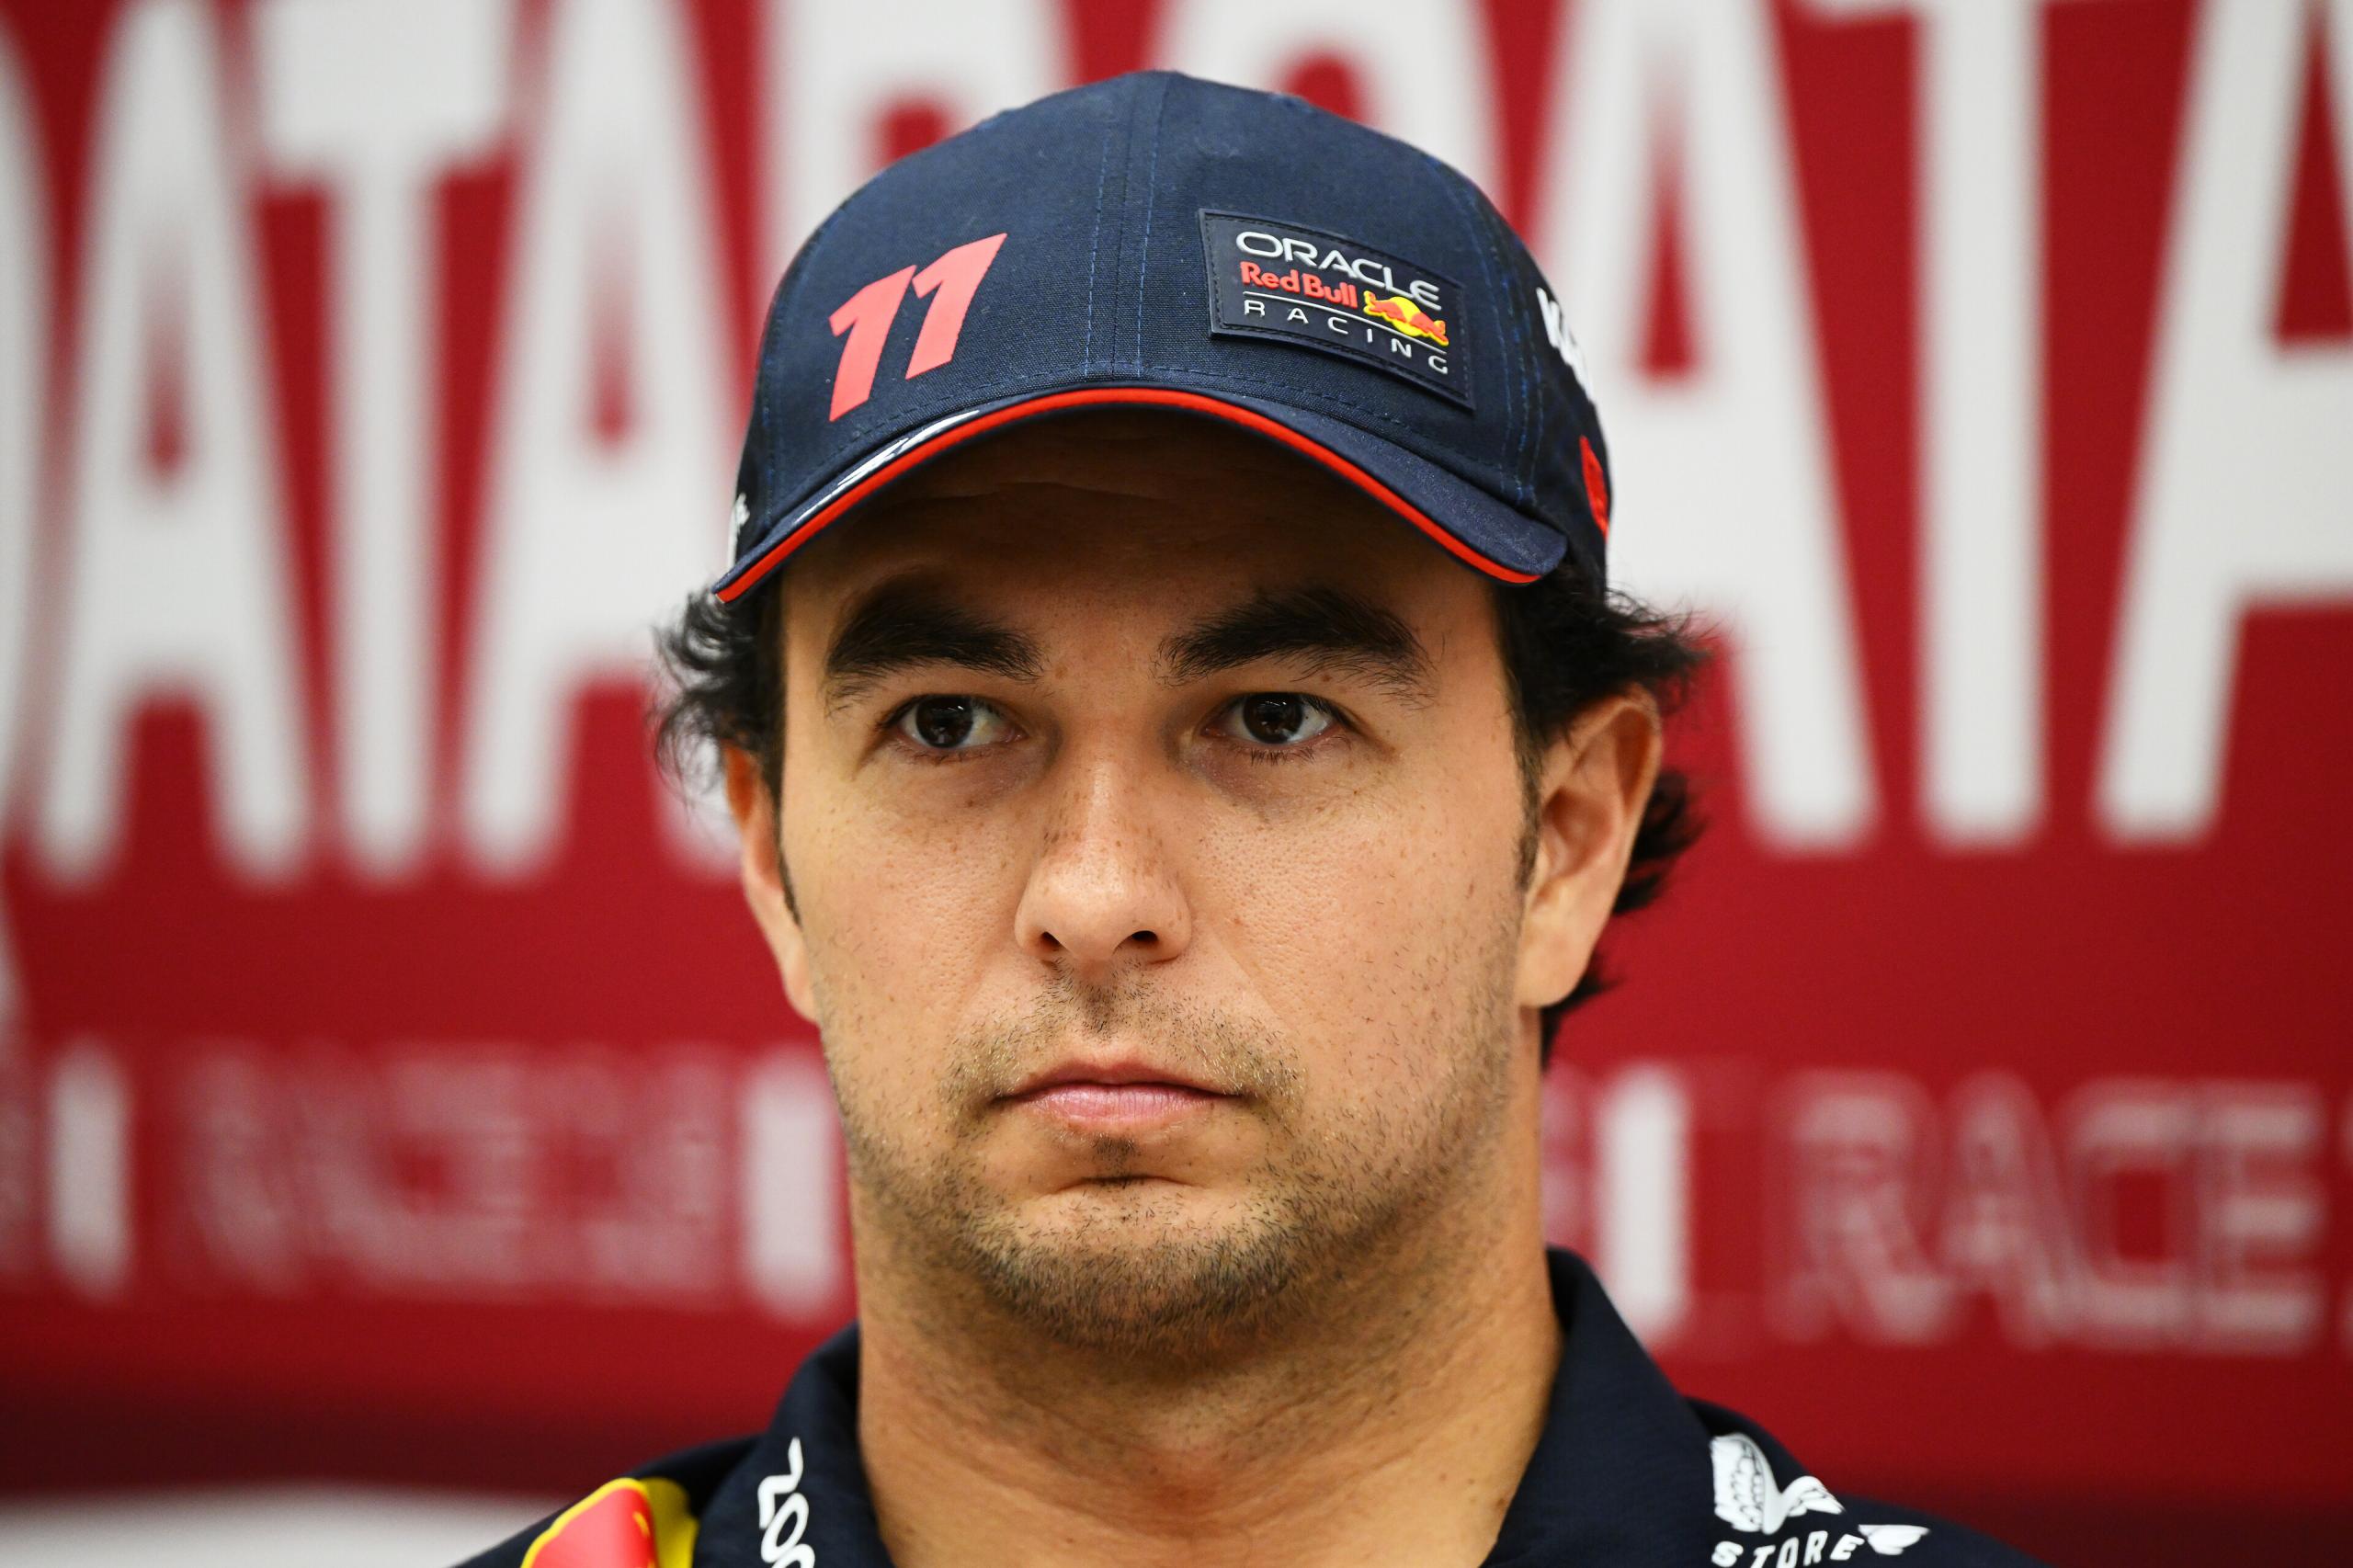 Pérez dans l'ombre de Verstappen et en pleine crise de pilote numéro 2 - Crédit photo : Red Bull Content Pool